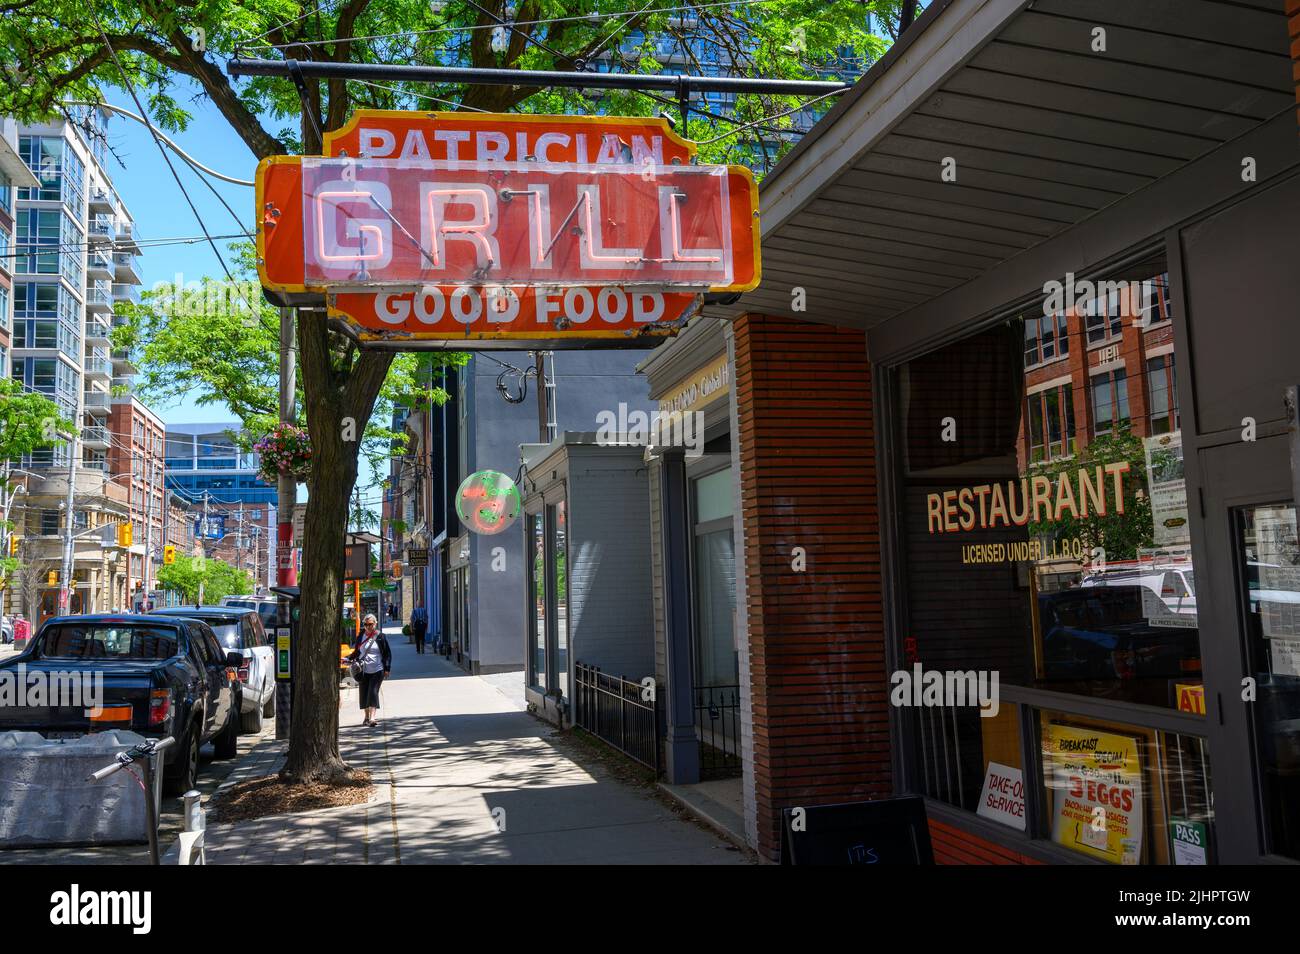 Panneau de restaurant peint à la main et au néon usé et abîmé pour le Patrician Grill faisant la promotion de « bons aliments » à King St East, Toronto, Ontario, Canada. Banque D'Images